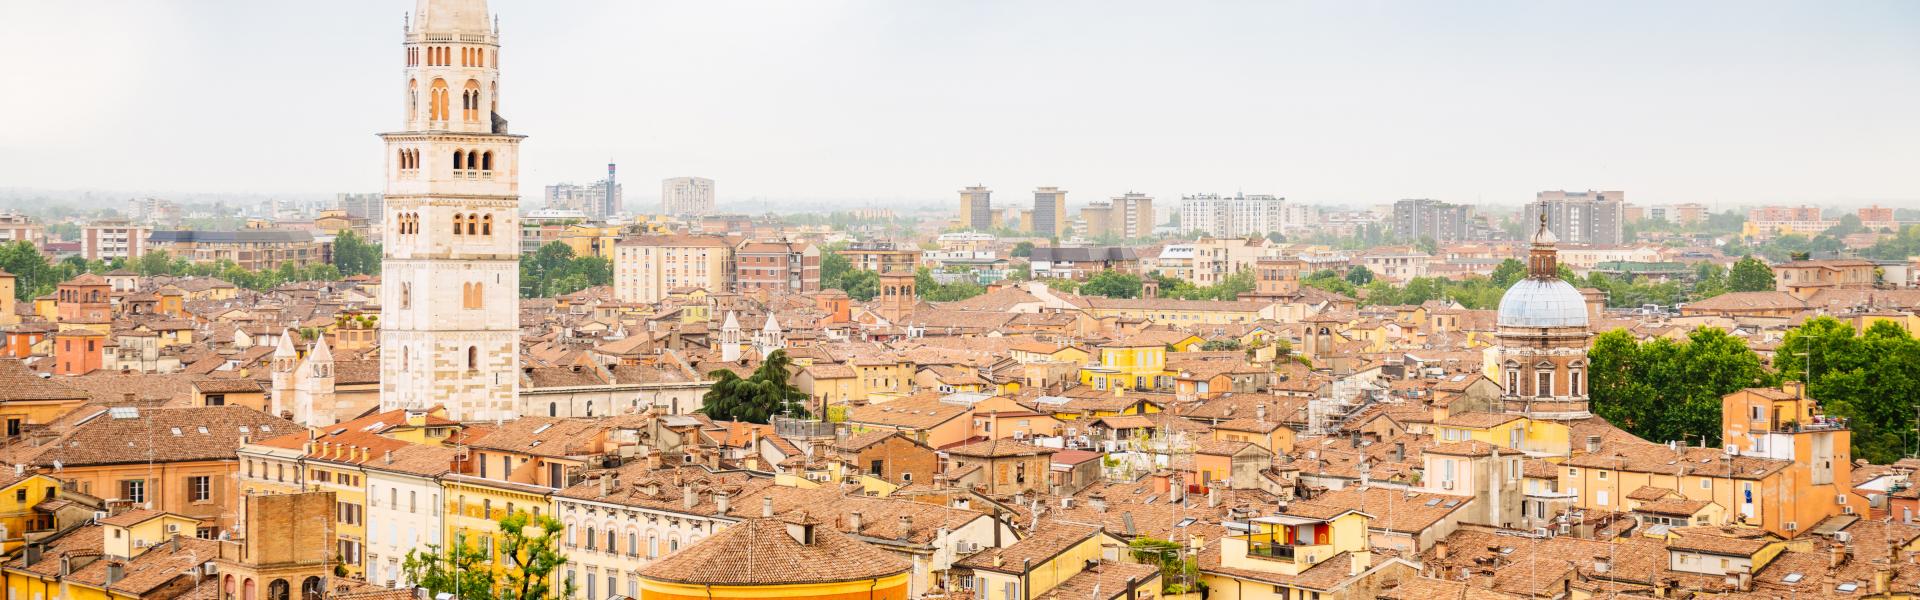 Modena Scenic View